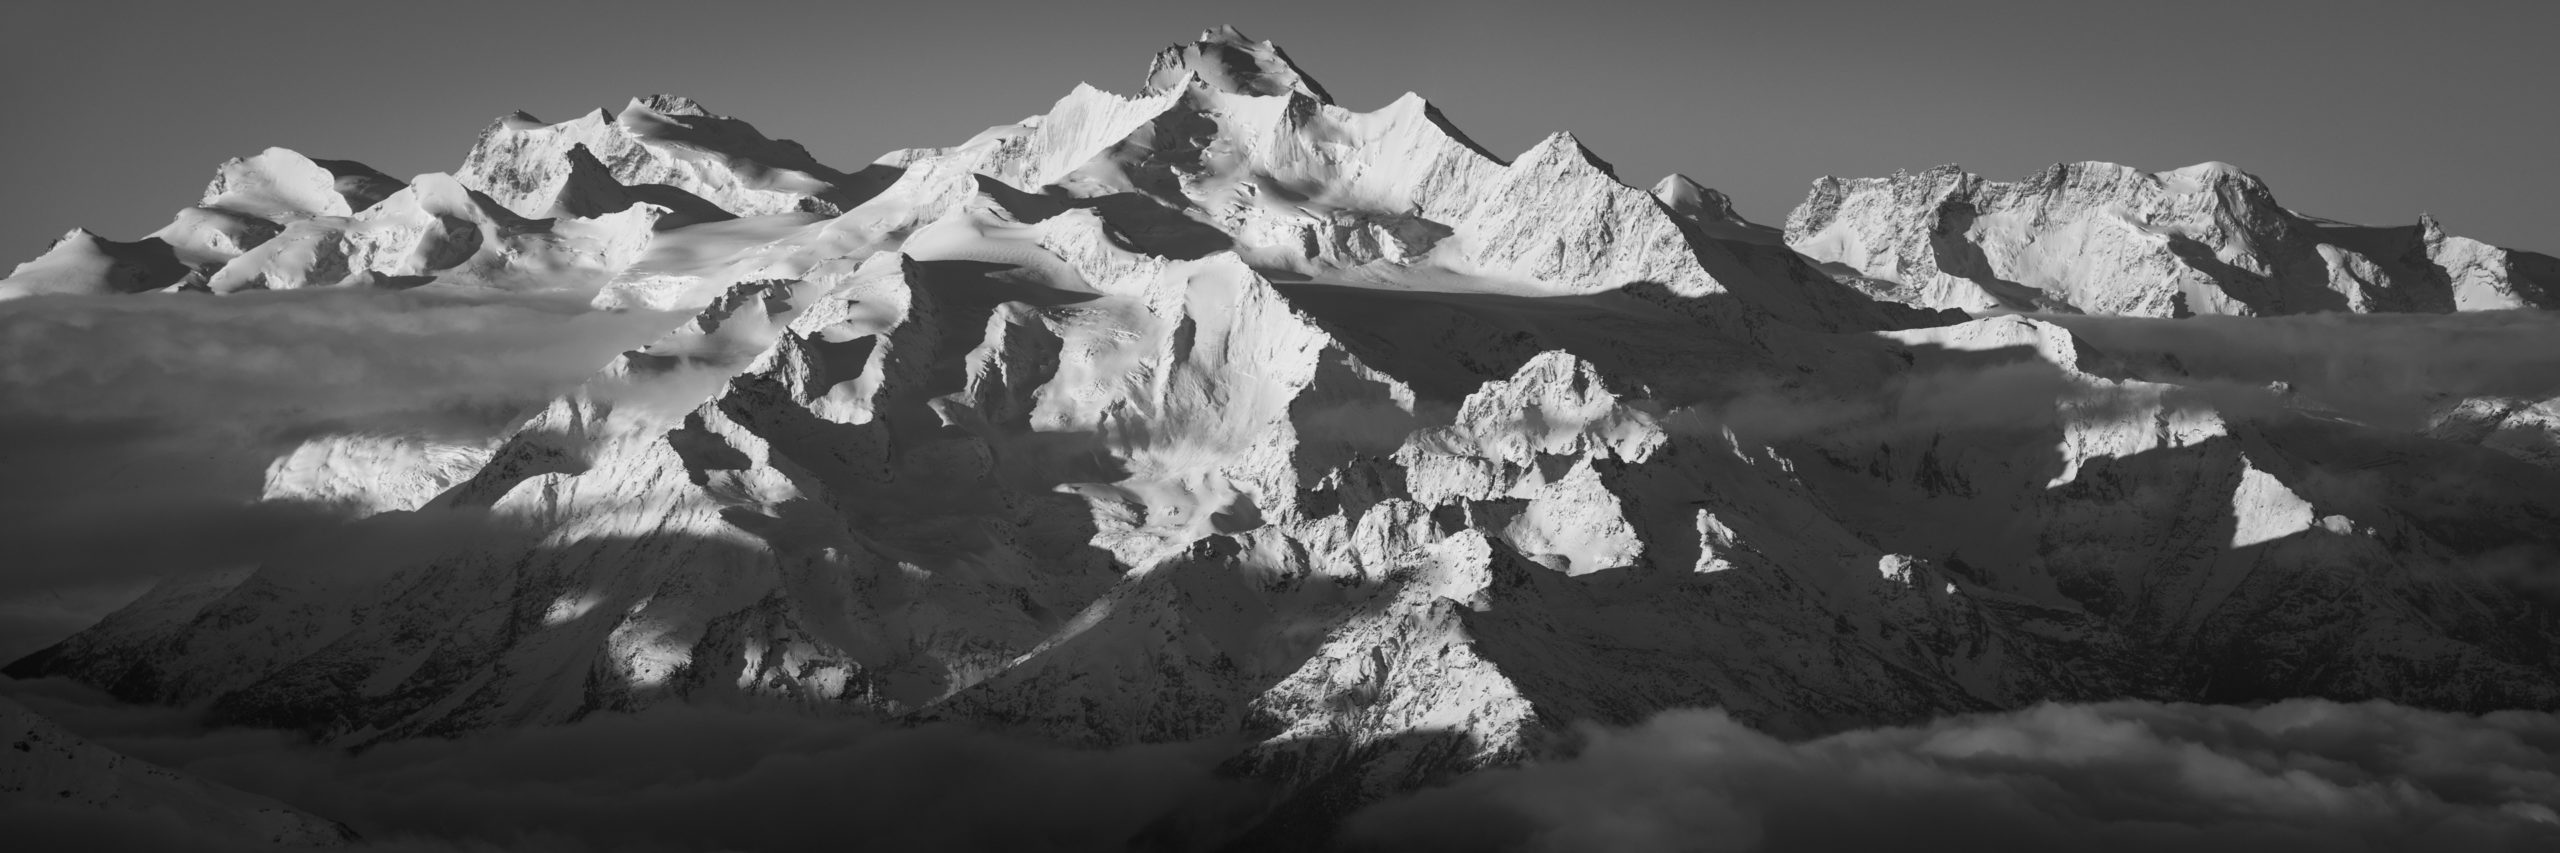 Panoramabild der Berge von Saas Fee - Panoramablick auf den Mischabels - Panorama des Monte Rosa von Breithorn über Zermatt